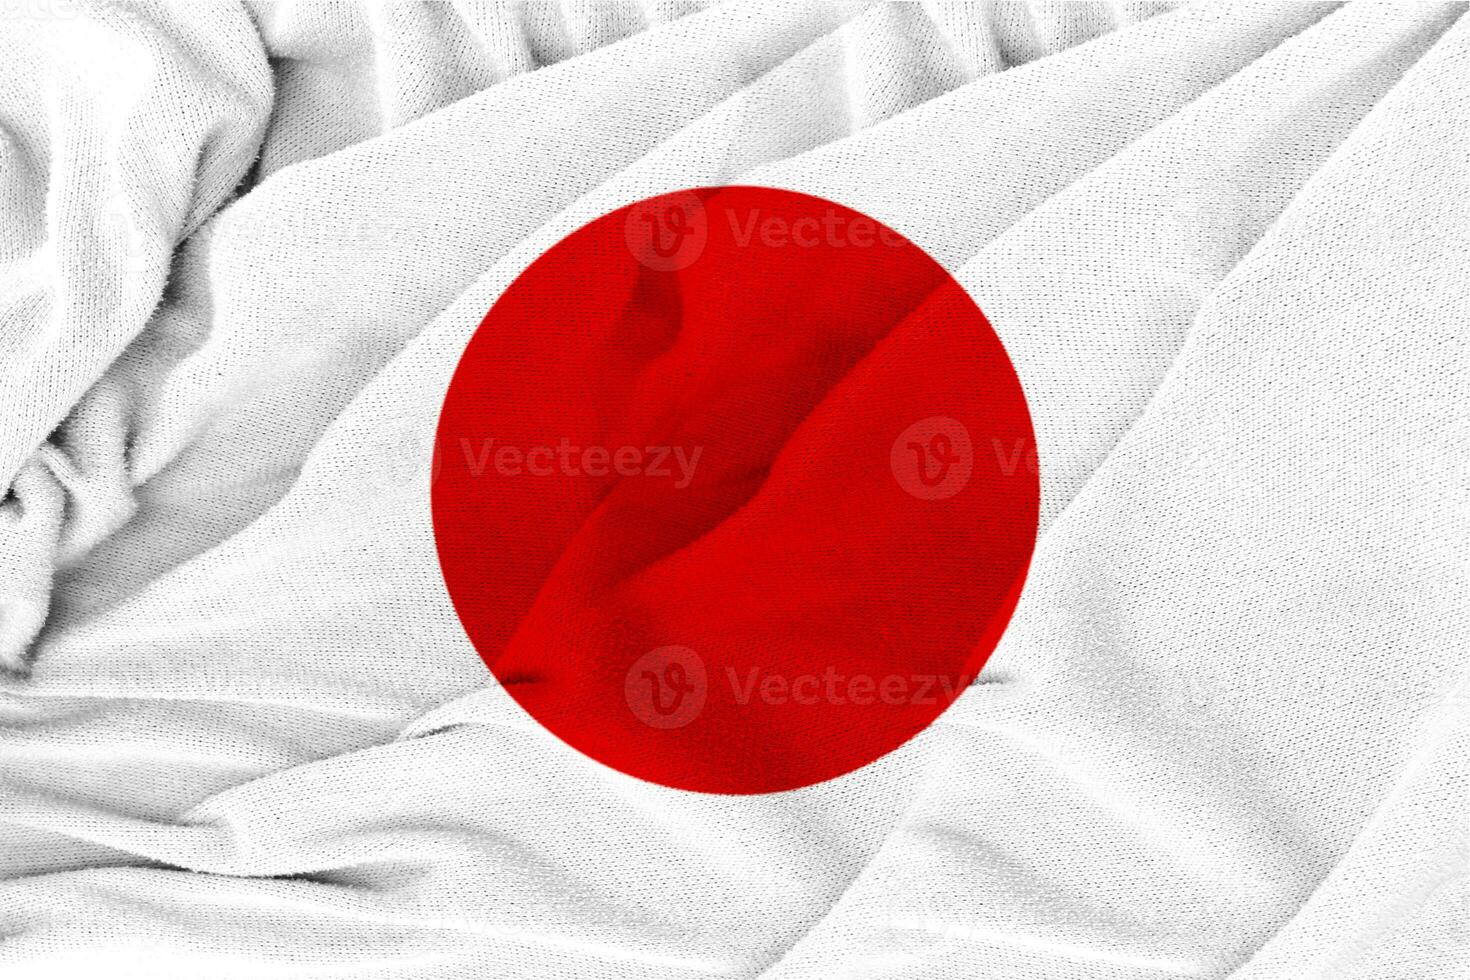 tissu texture ondulée drapeau national du japon. photo